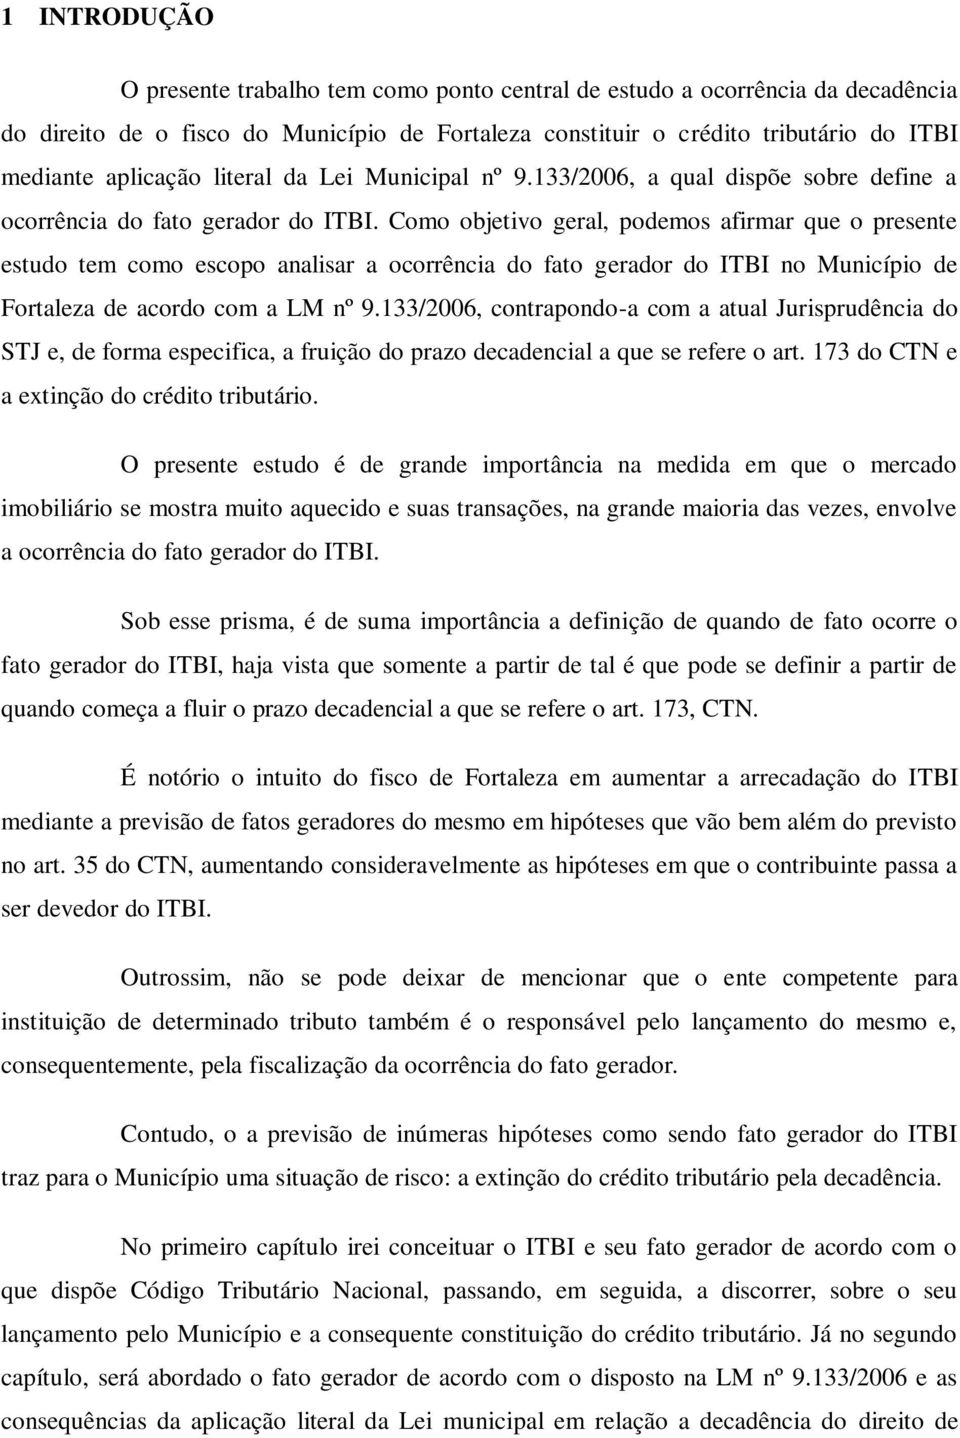 Como objetivo geral, podemos afirmar que o presente estudo tem como escopo analisar a ocorrência do fato gerador do ITBI no Município de Fortaleza de acordo com a LM nº 9.